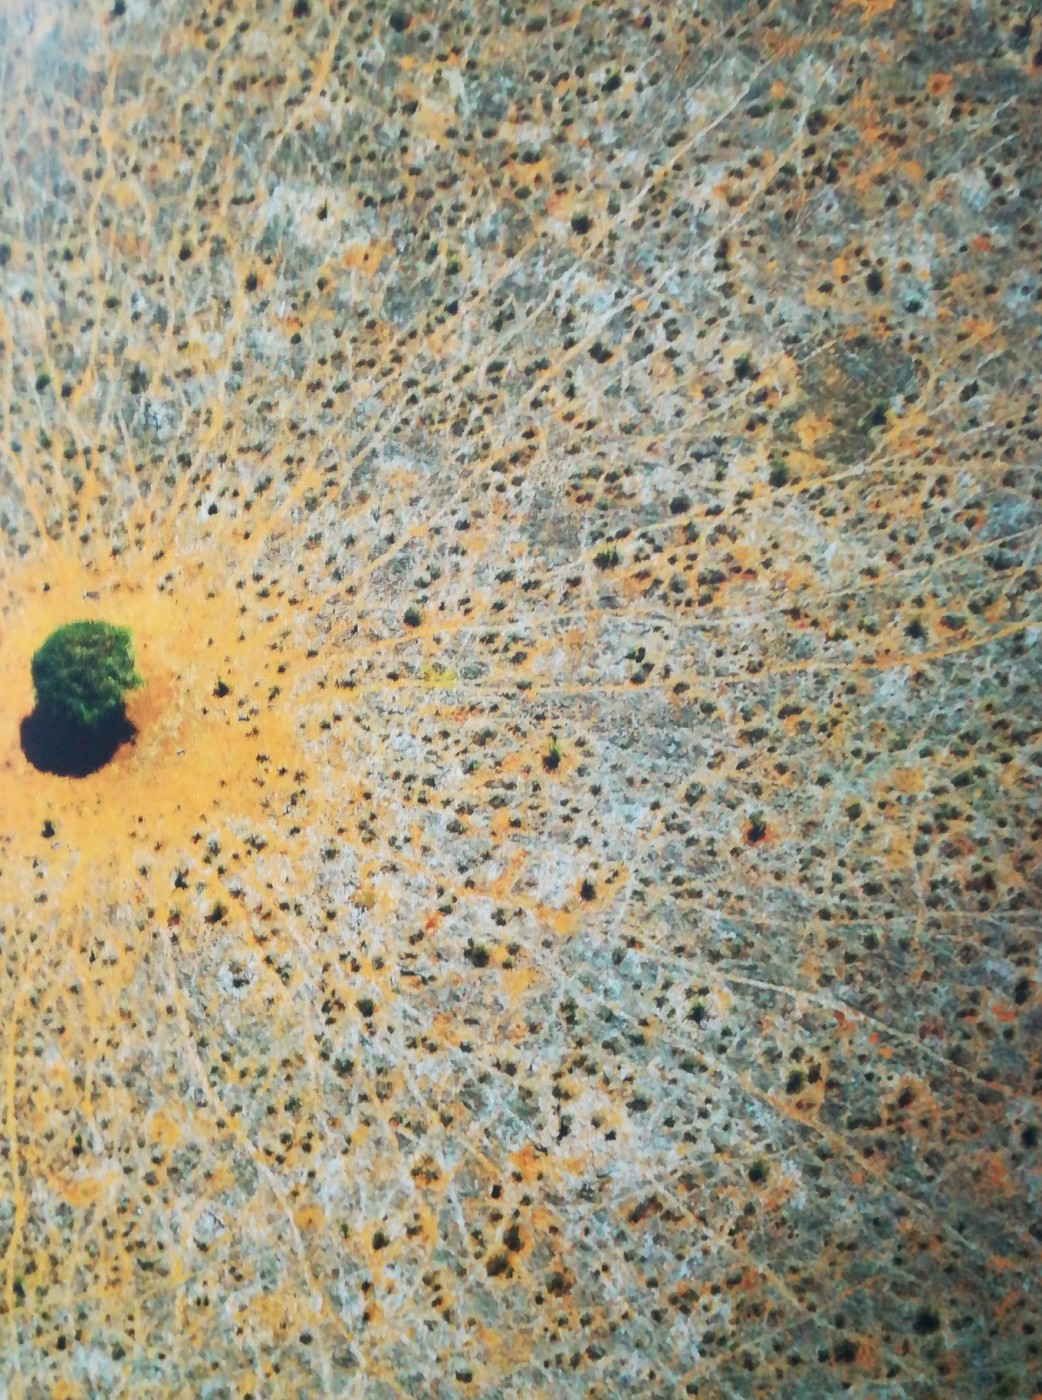 L’albero della vita, Parco Nazionale di Tsavo est, Kenya 